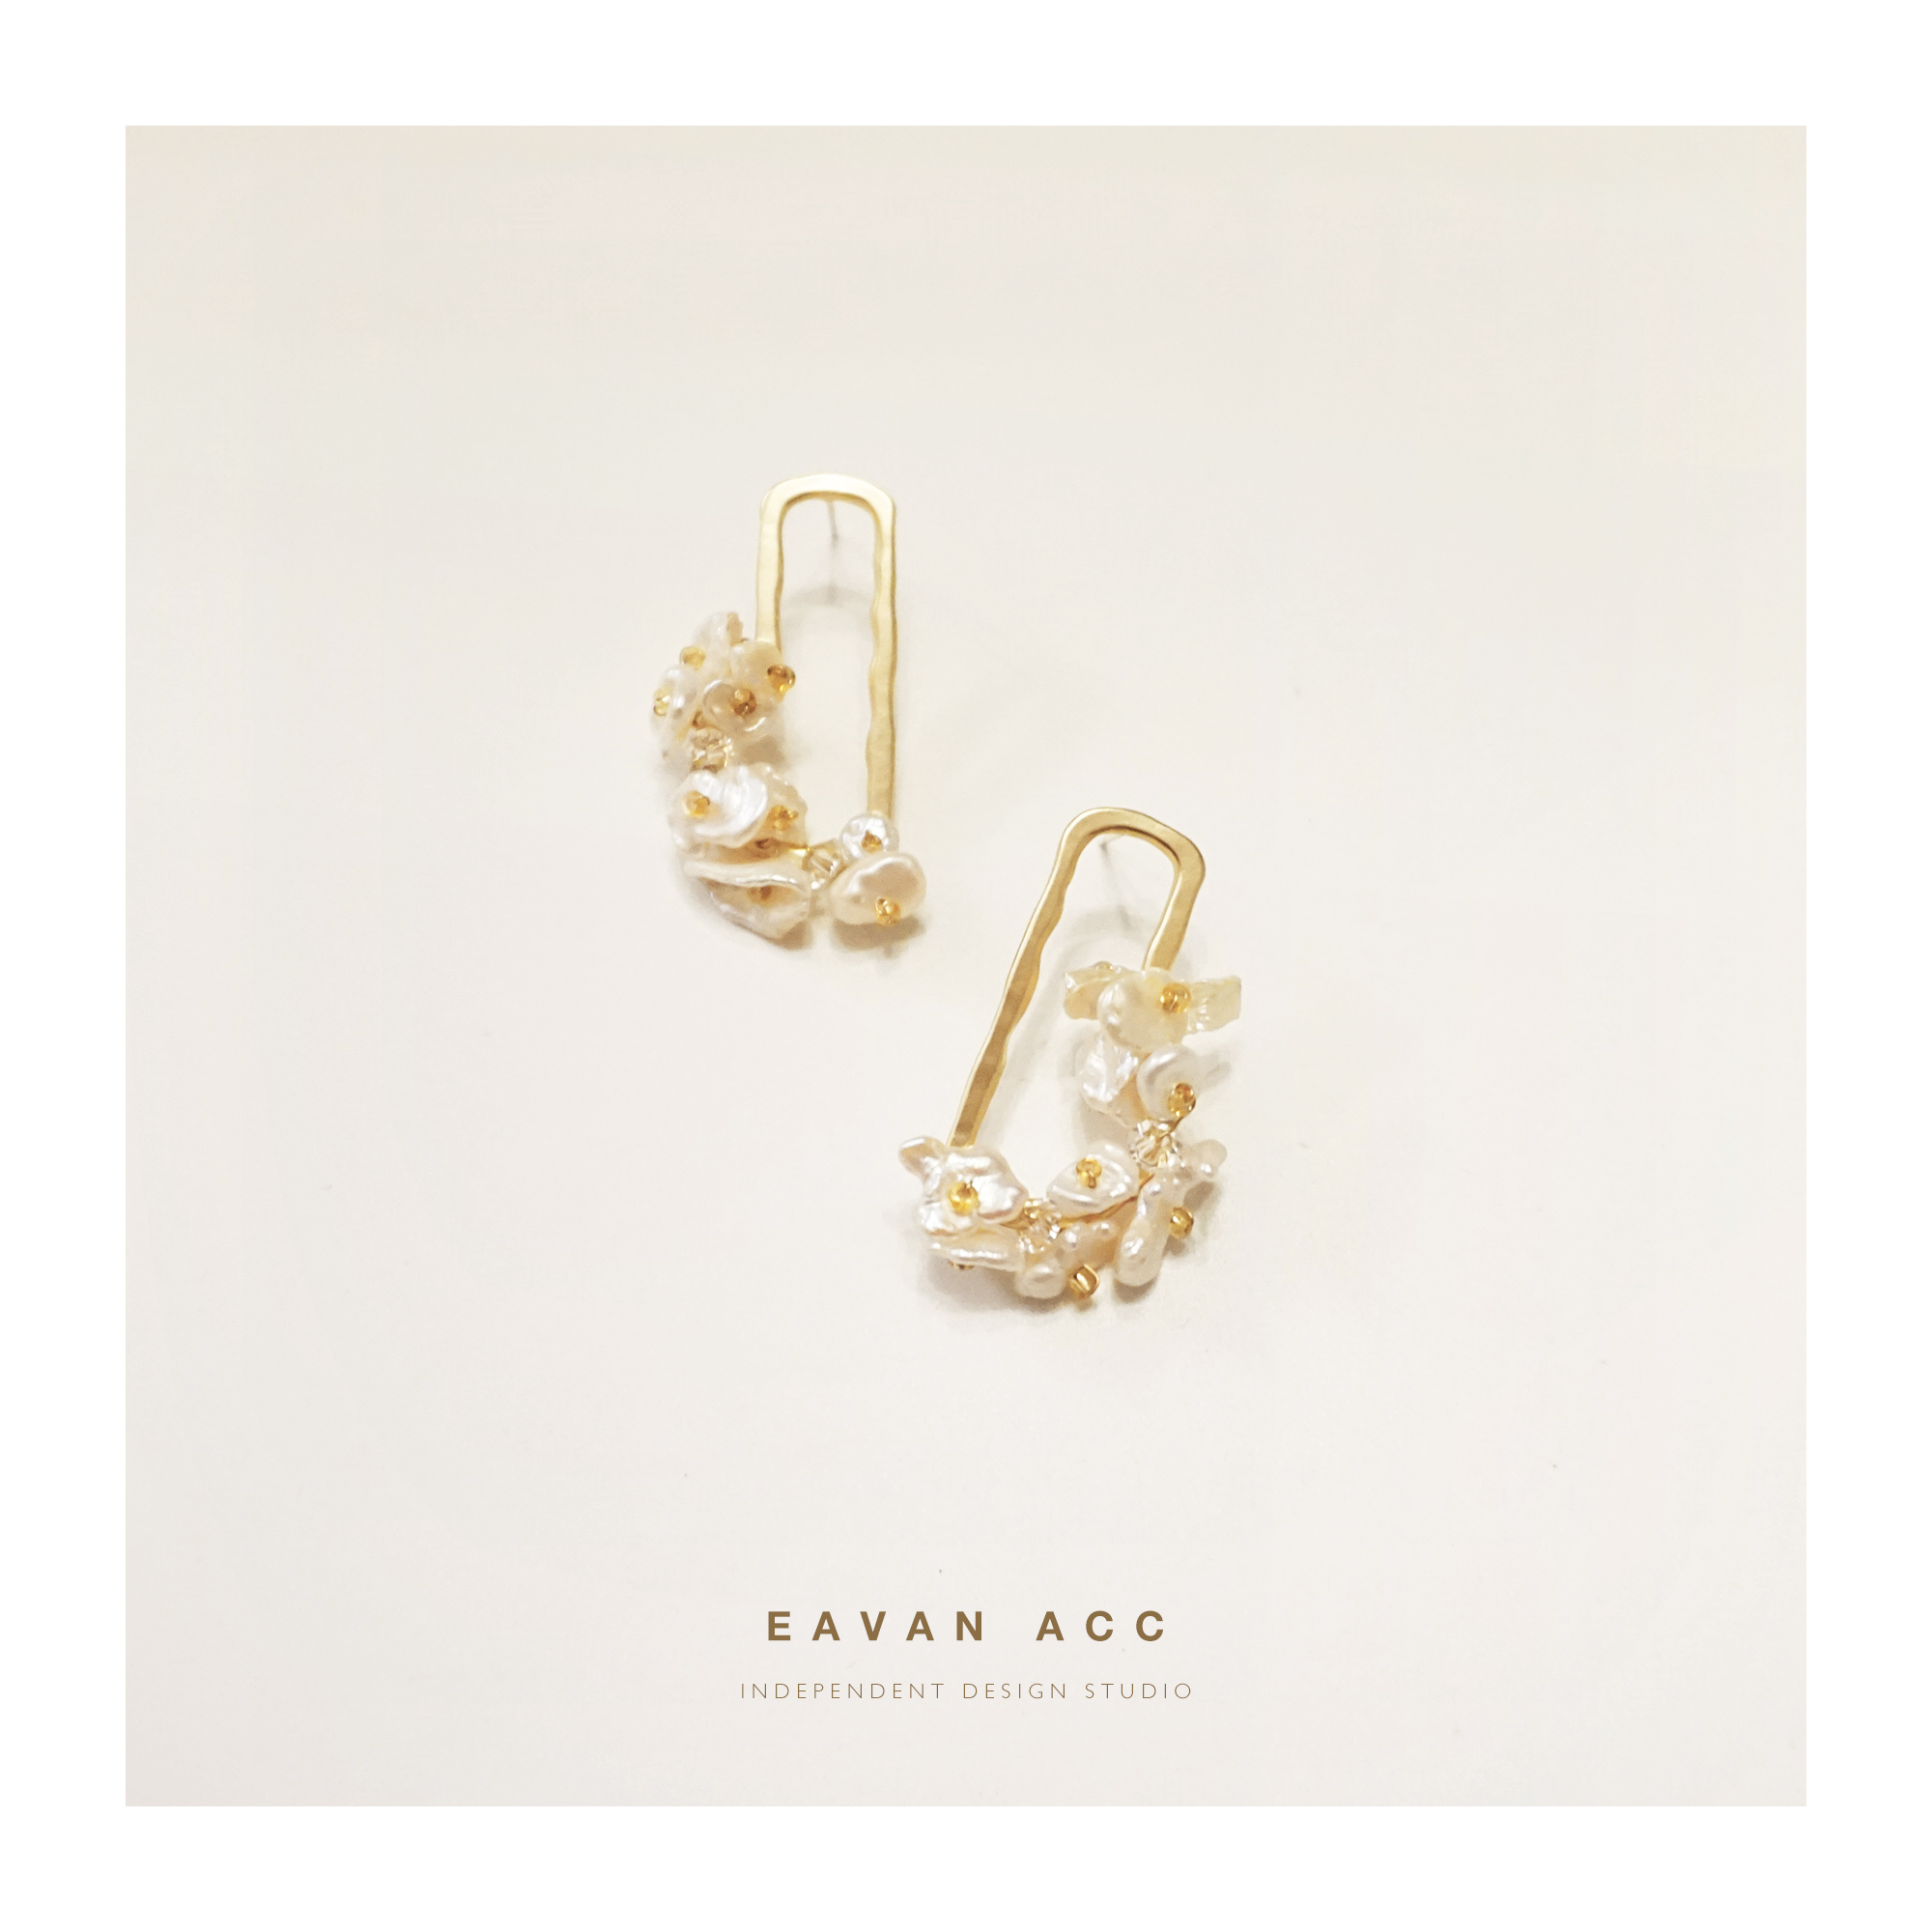 EAVAN ACC 秘密花园 重磅天然贝壳花 复古优雅小众设计师款耳环